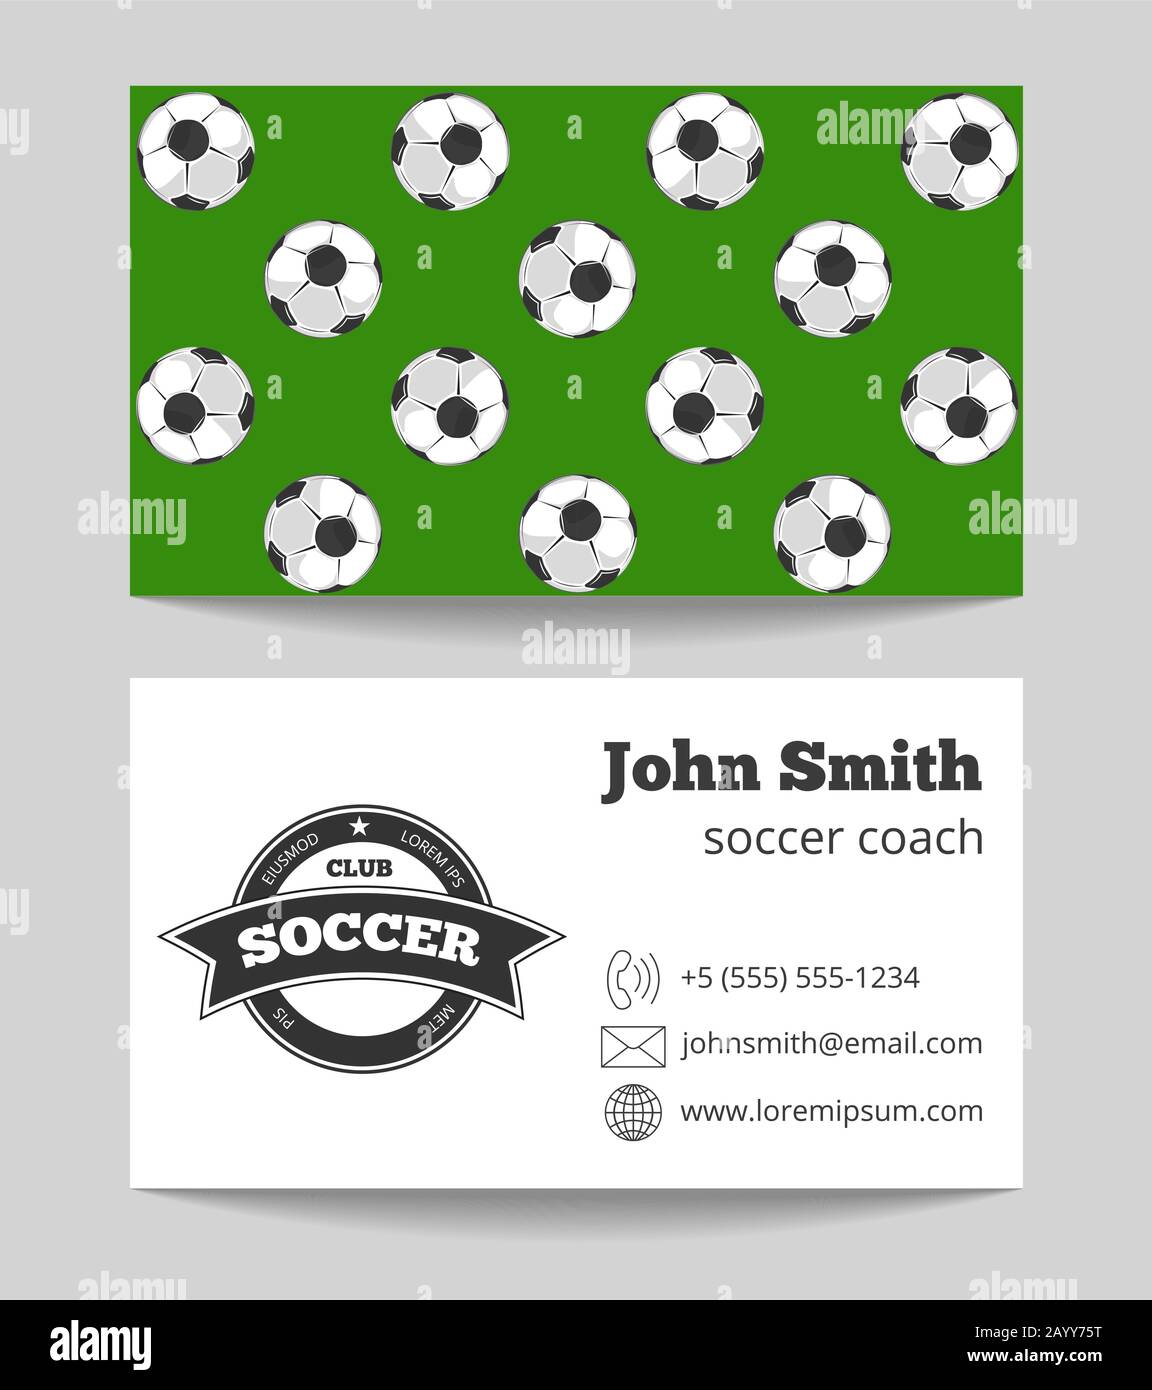 Business-Card des Fußballclubs auf beiden Seiten Vorlage in grün und weiß. Vektorgrafiken Stock Vektor